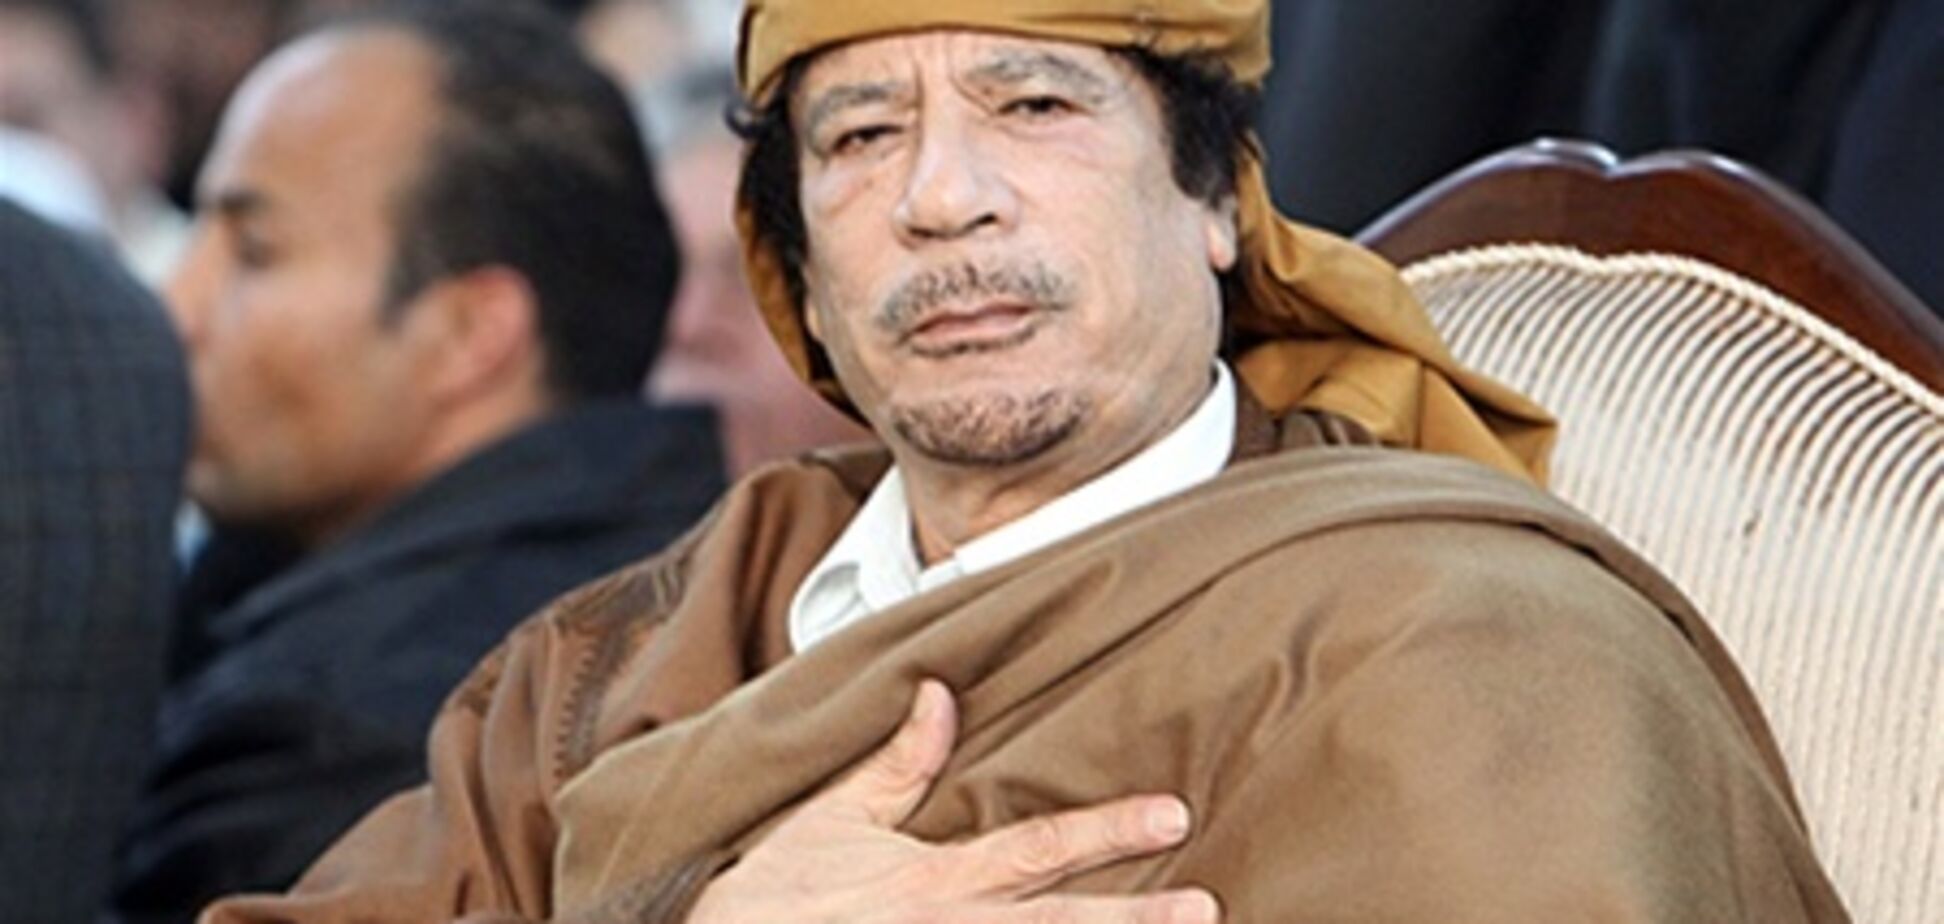 Син Каддафі: батько готовий передати владу повстанцям